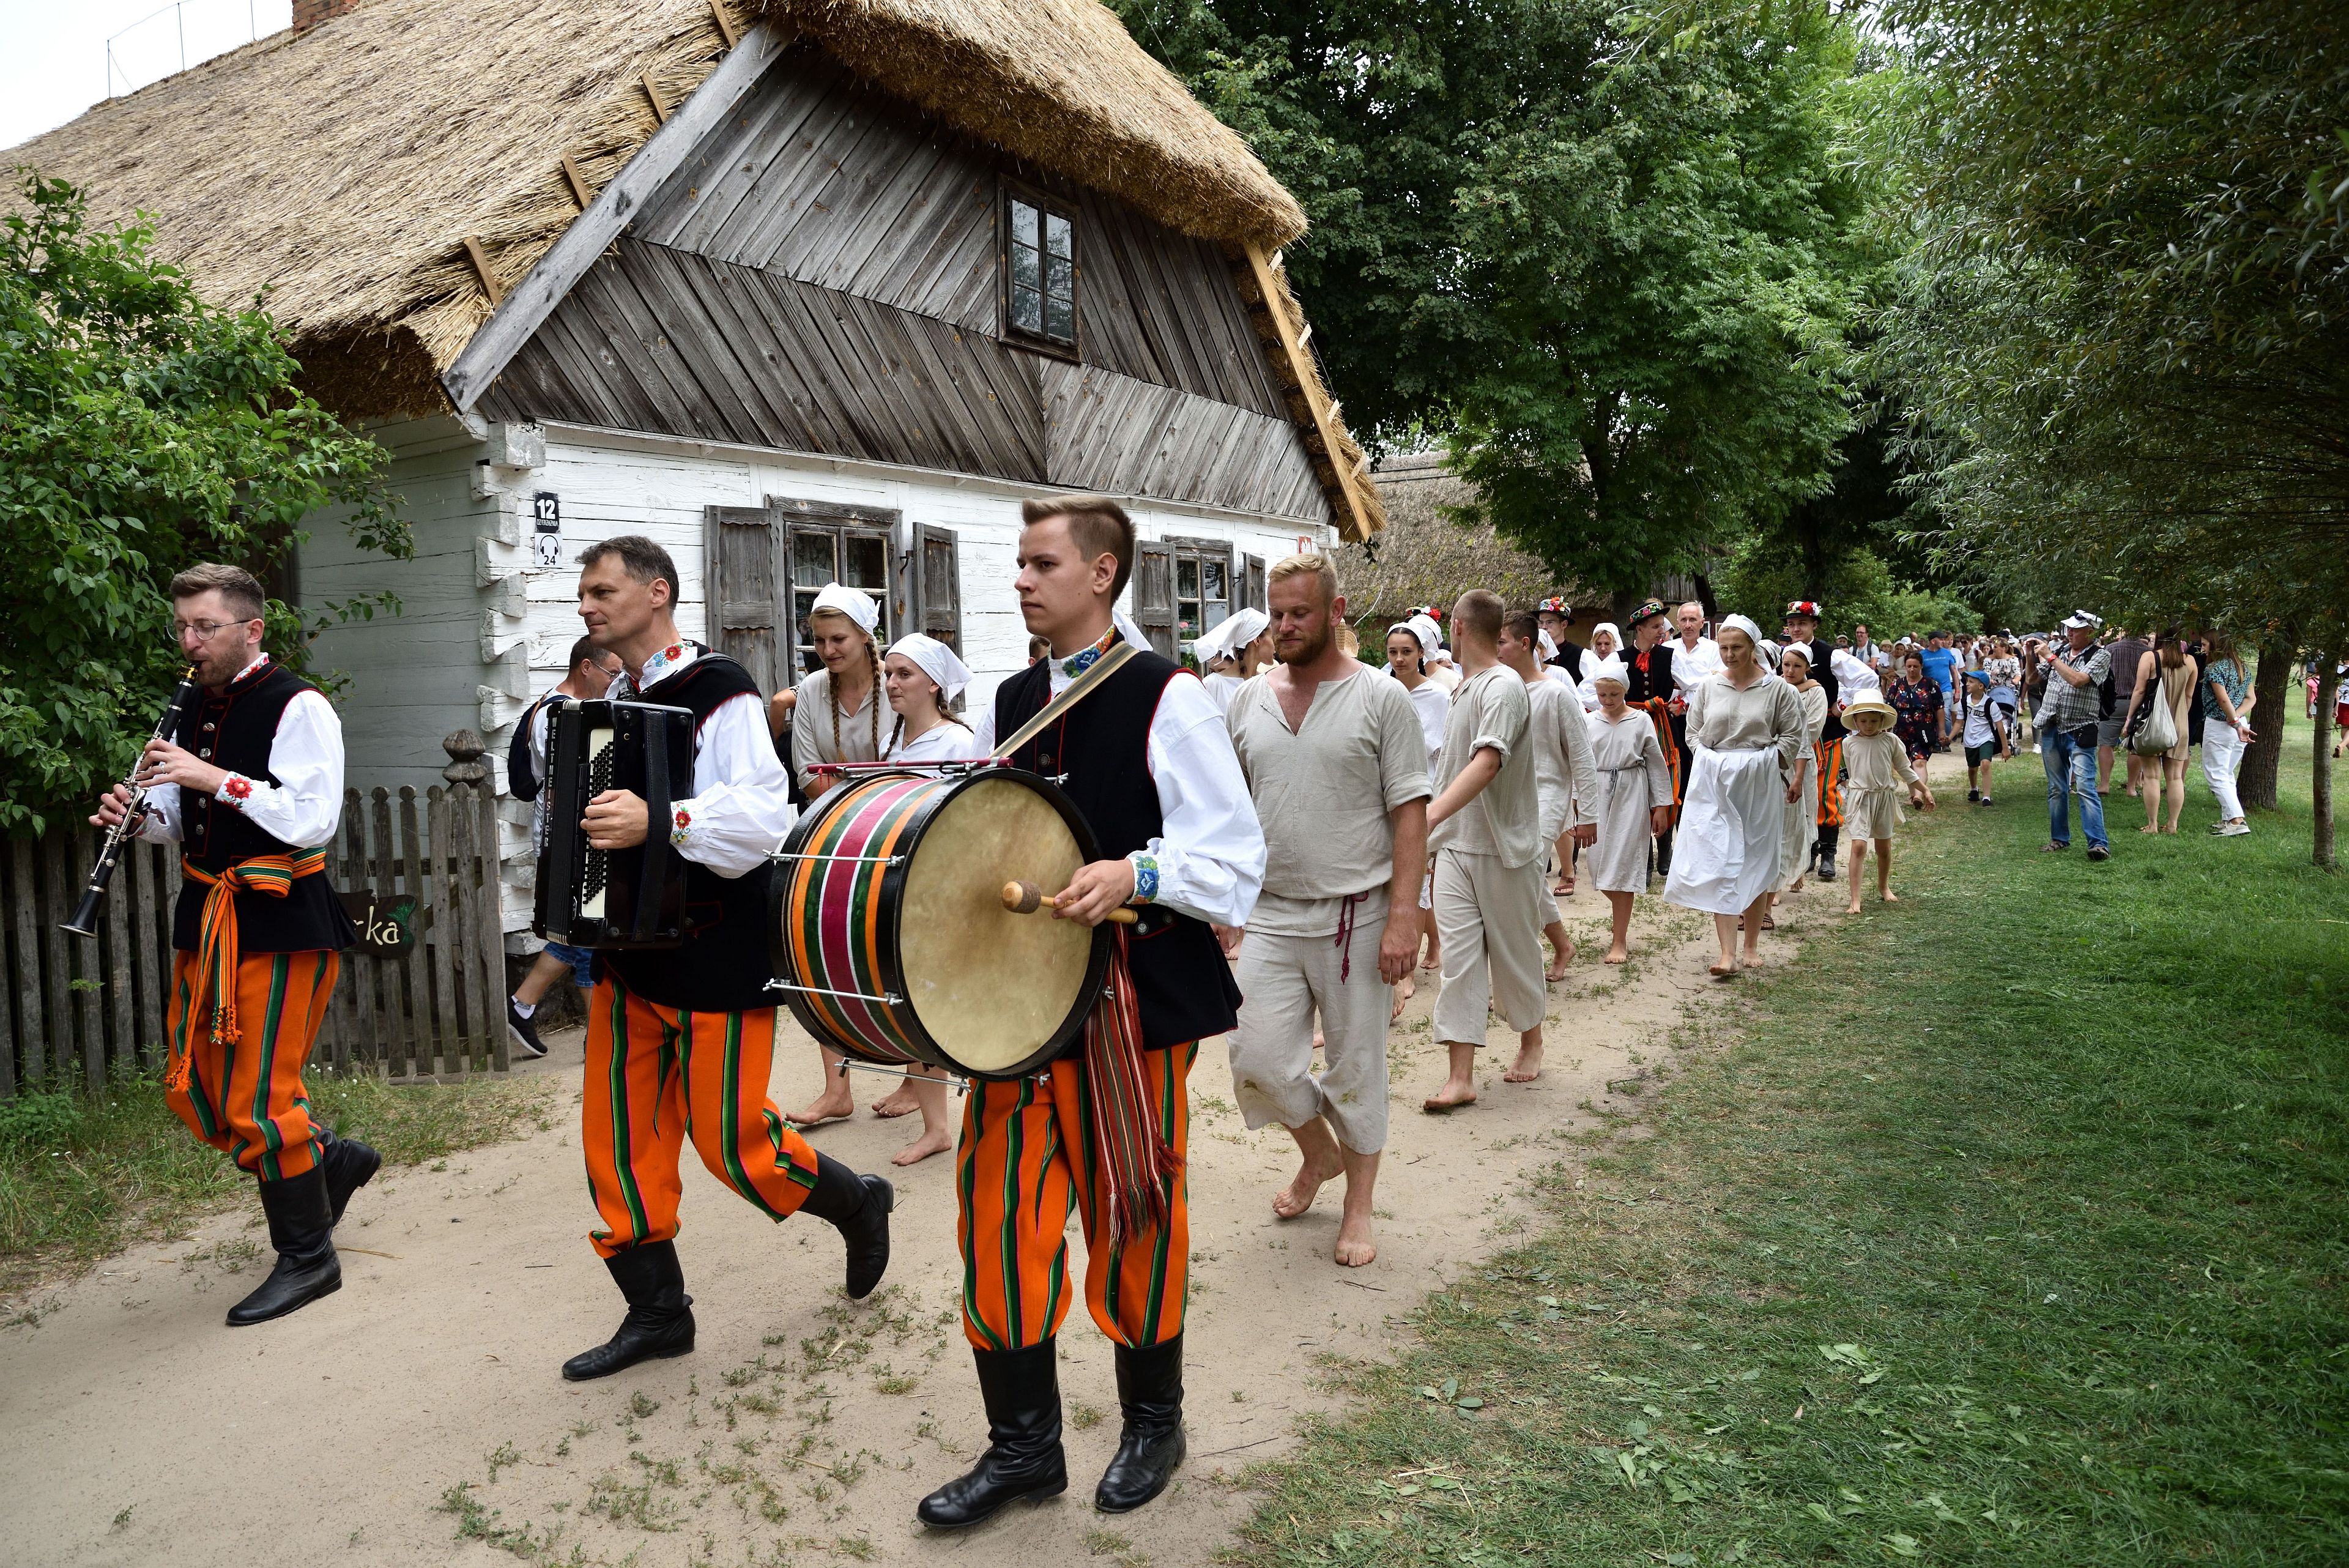 Regionalny Zespól Pieśni i Tańca Boczki Chełmońskie ruszył w korowodzie do kościoła. Żniwa w skansenie, 1.08.2021 r.